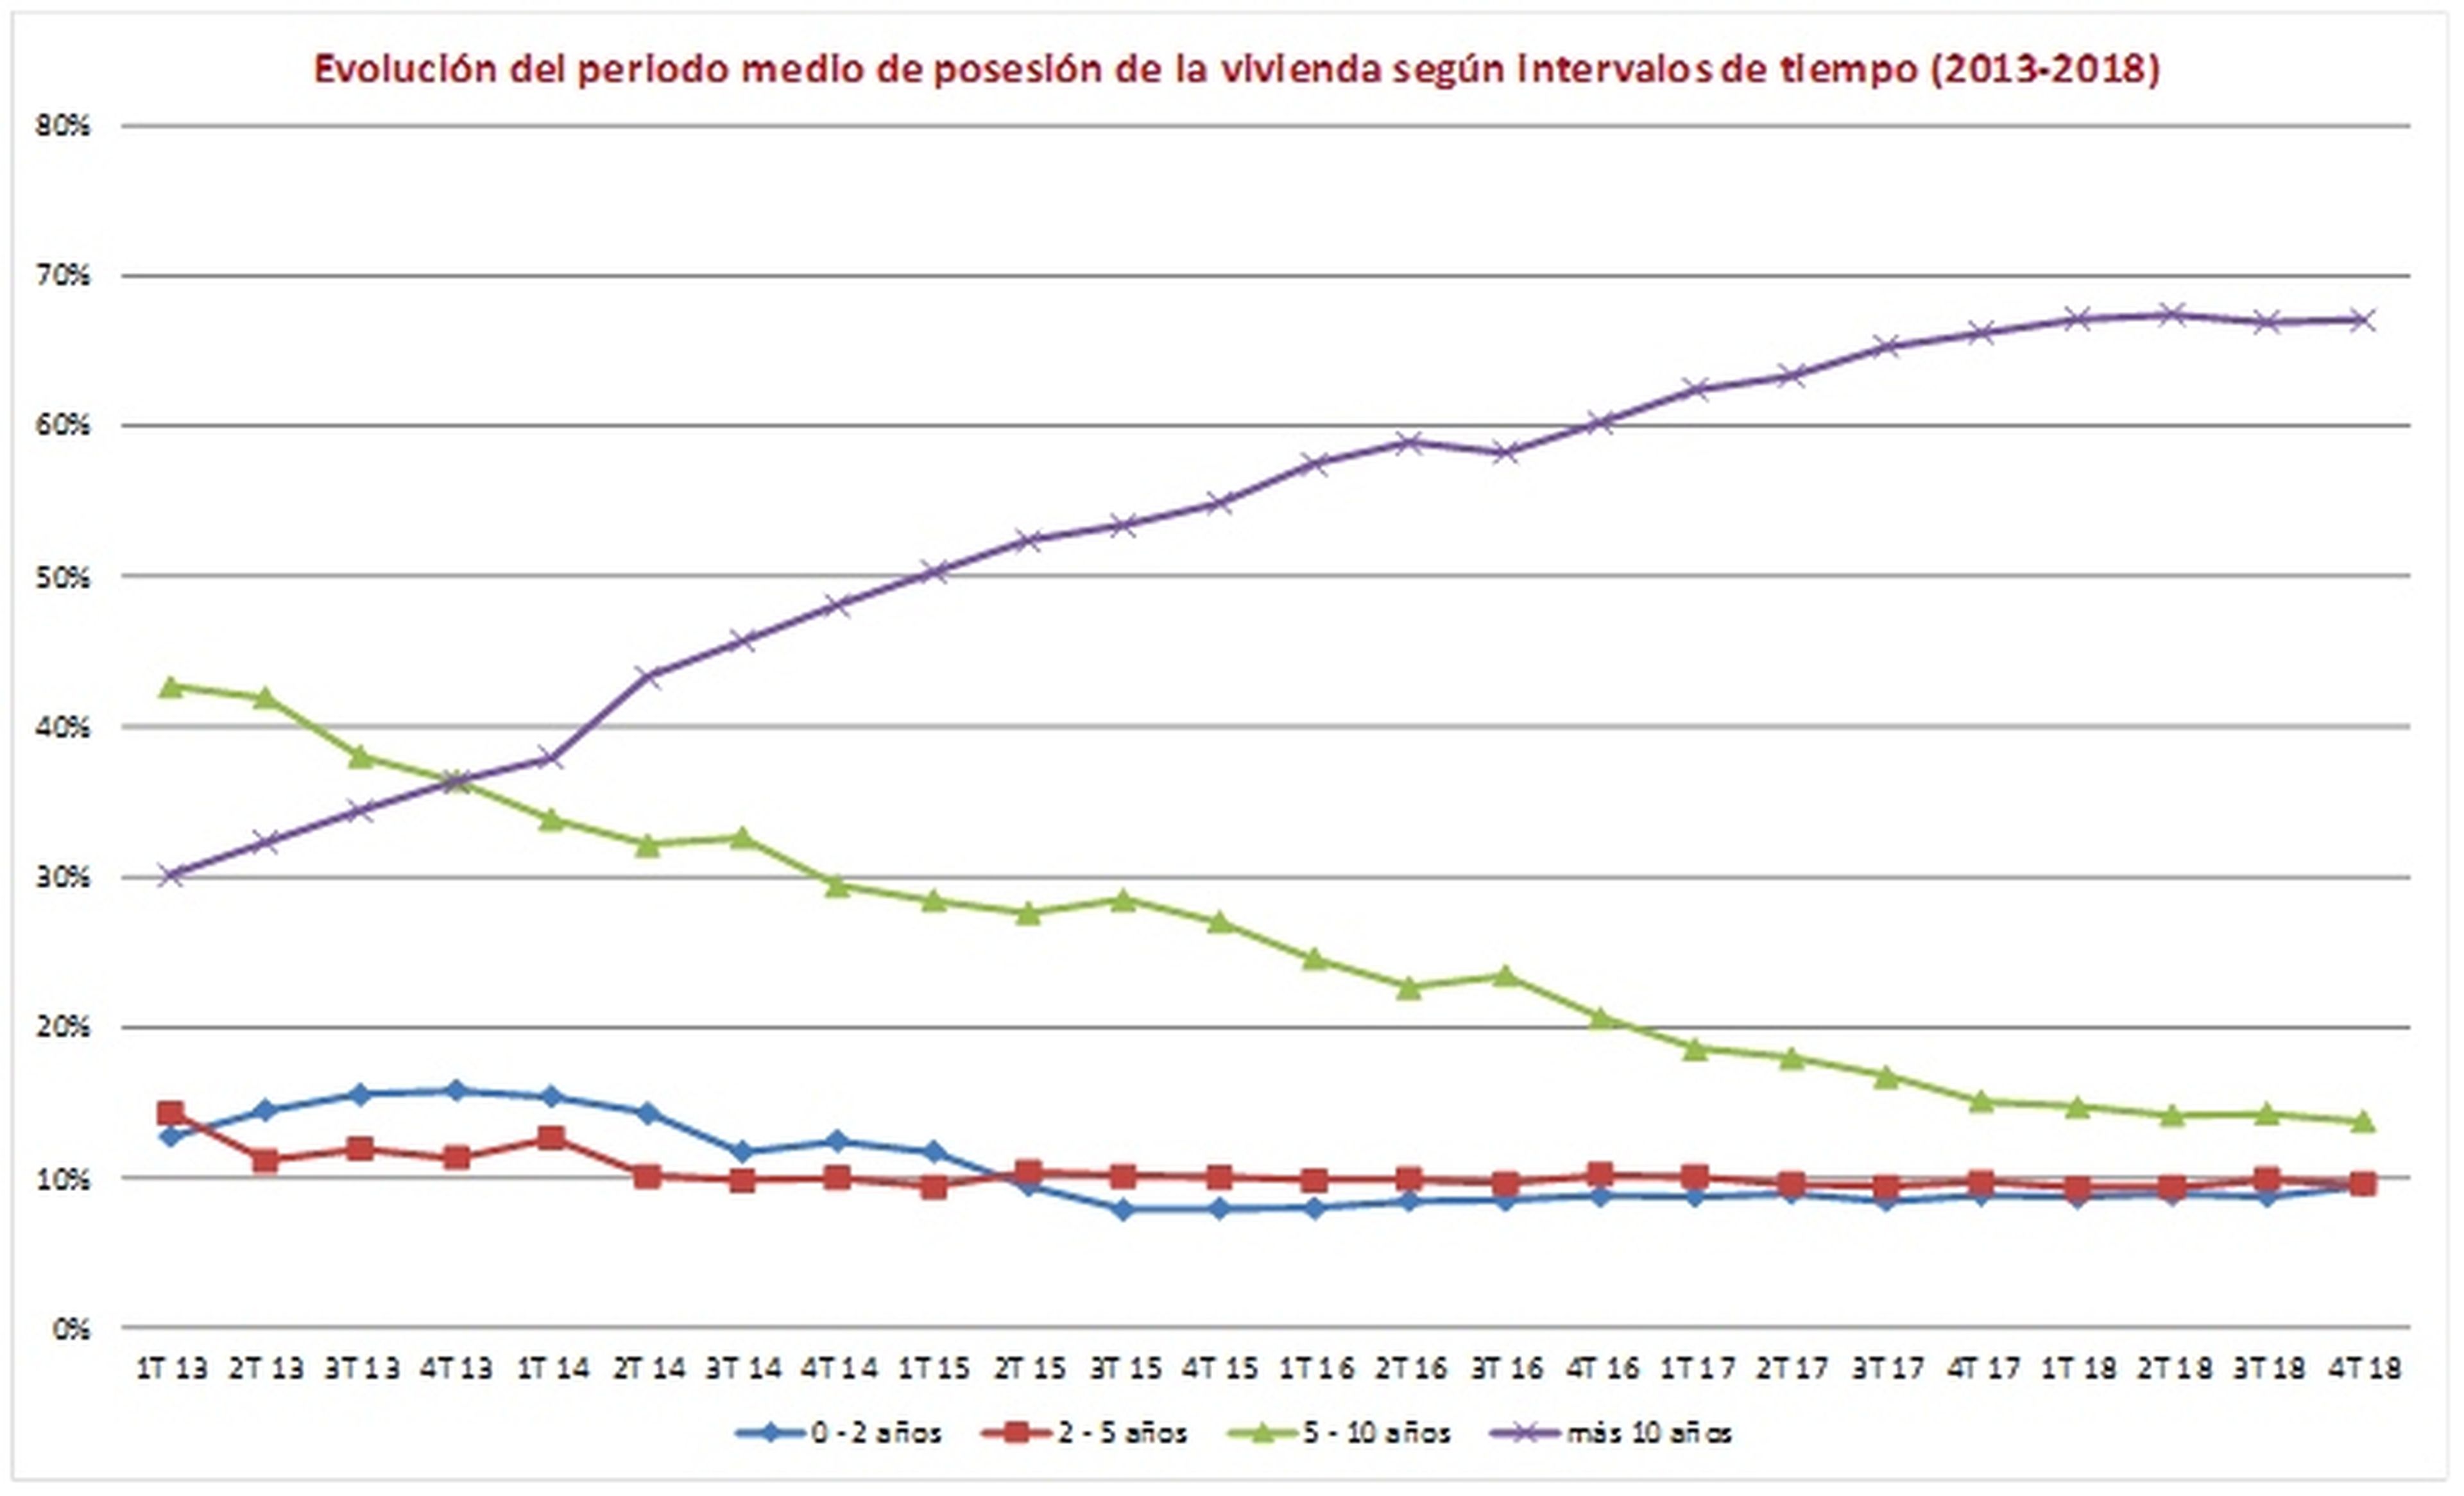 Tiempo de posesión media de vivienda en España entre 2013 y 2018